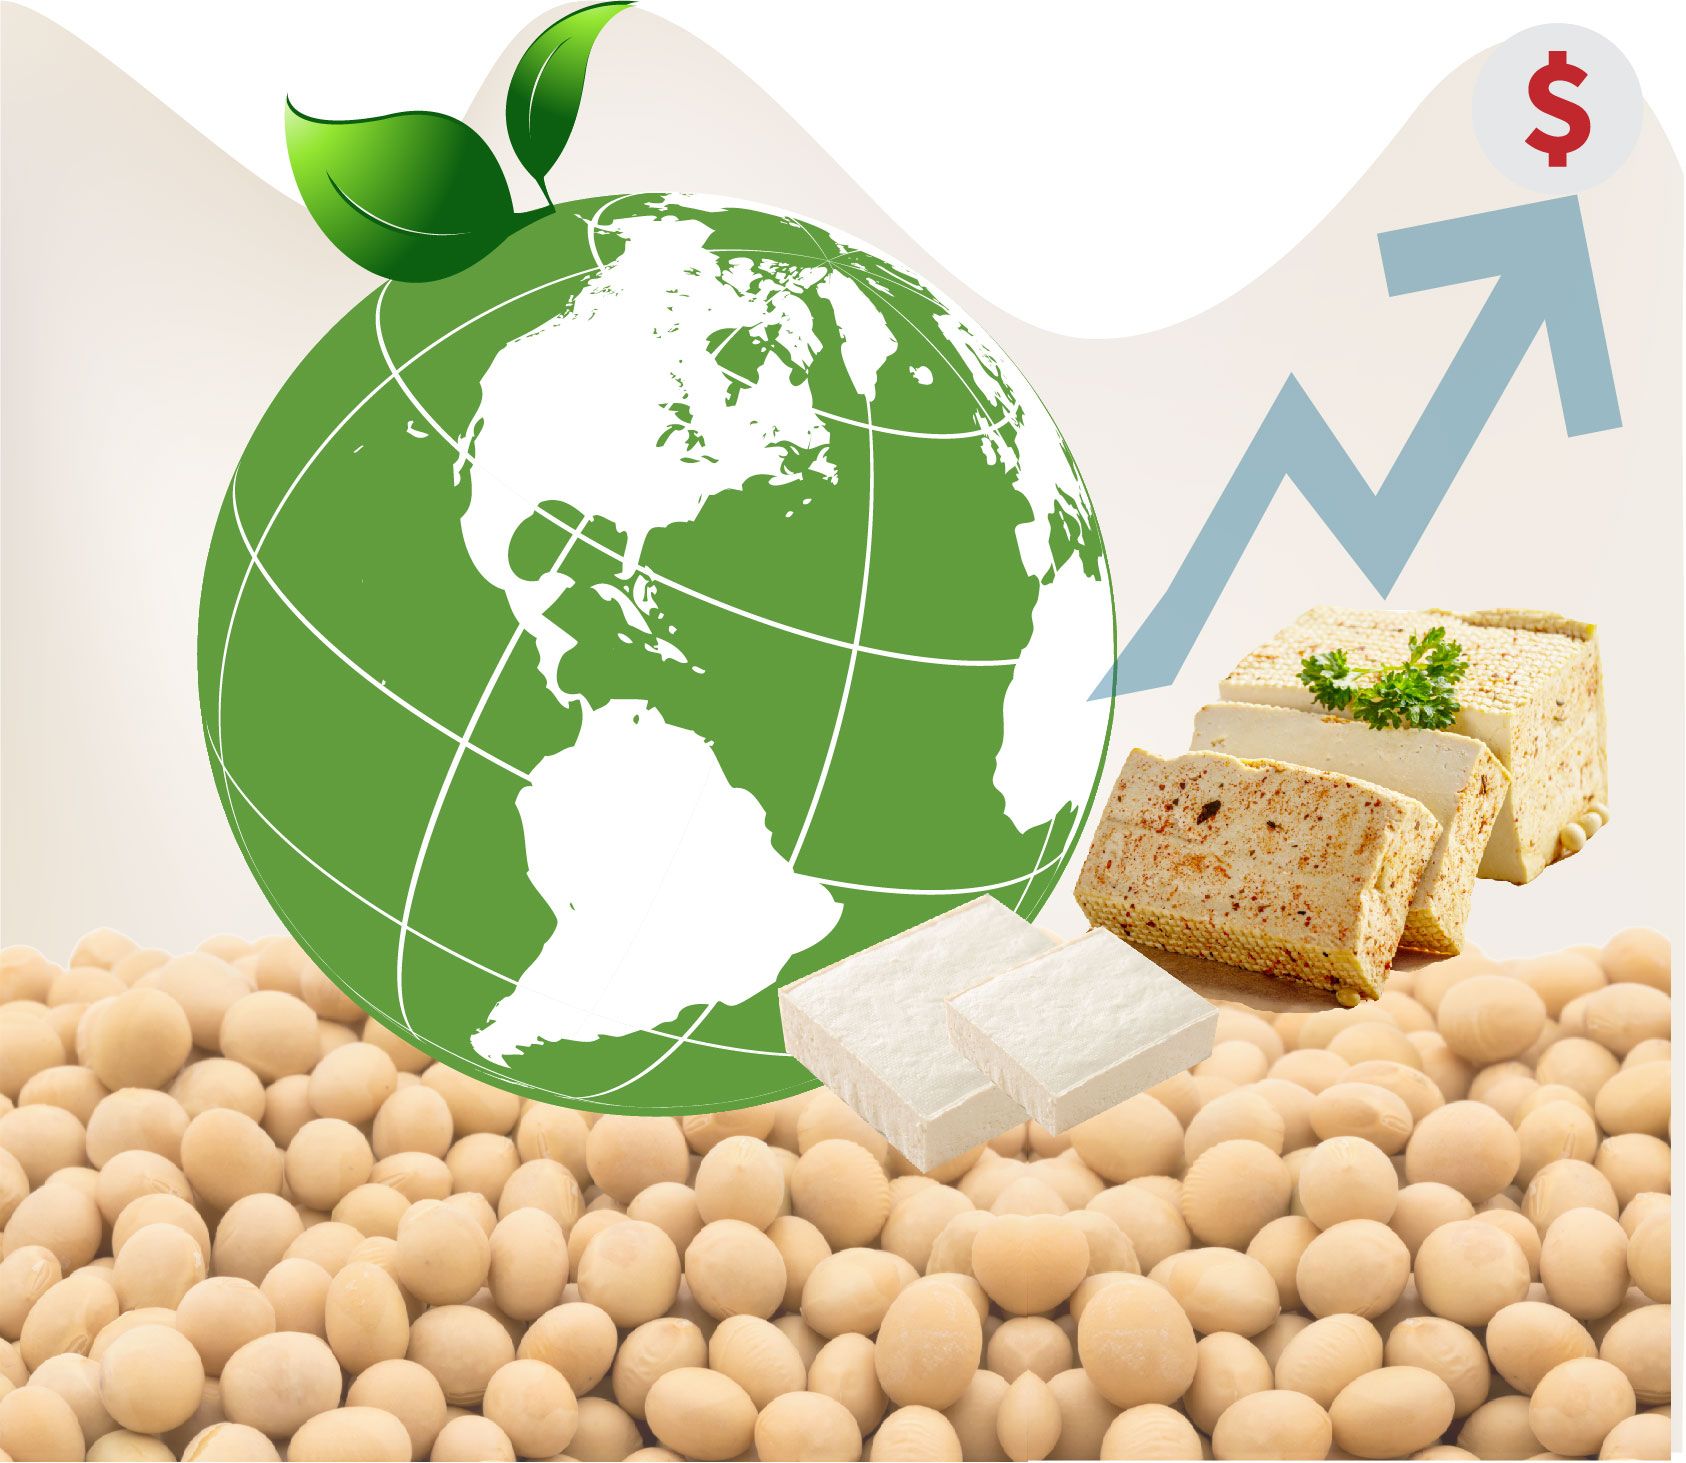 Tofu trg, vnos beljakovin, tovarna za proizvodnjo tofuja in sojinega mleka